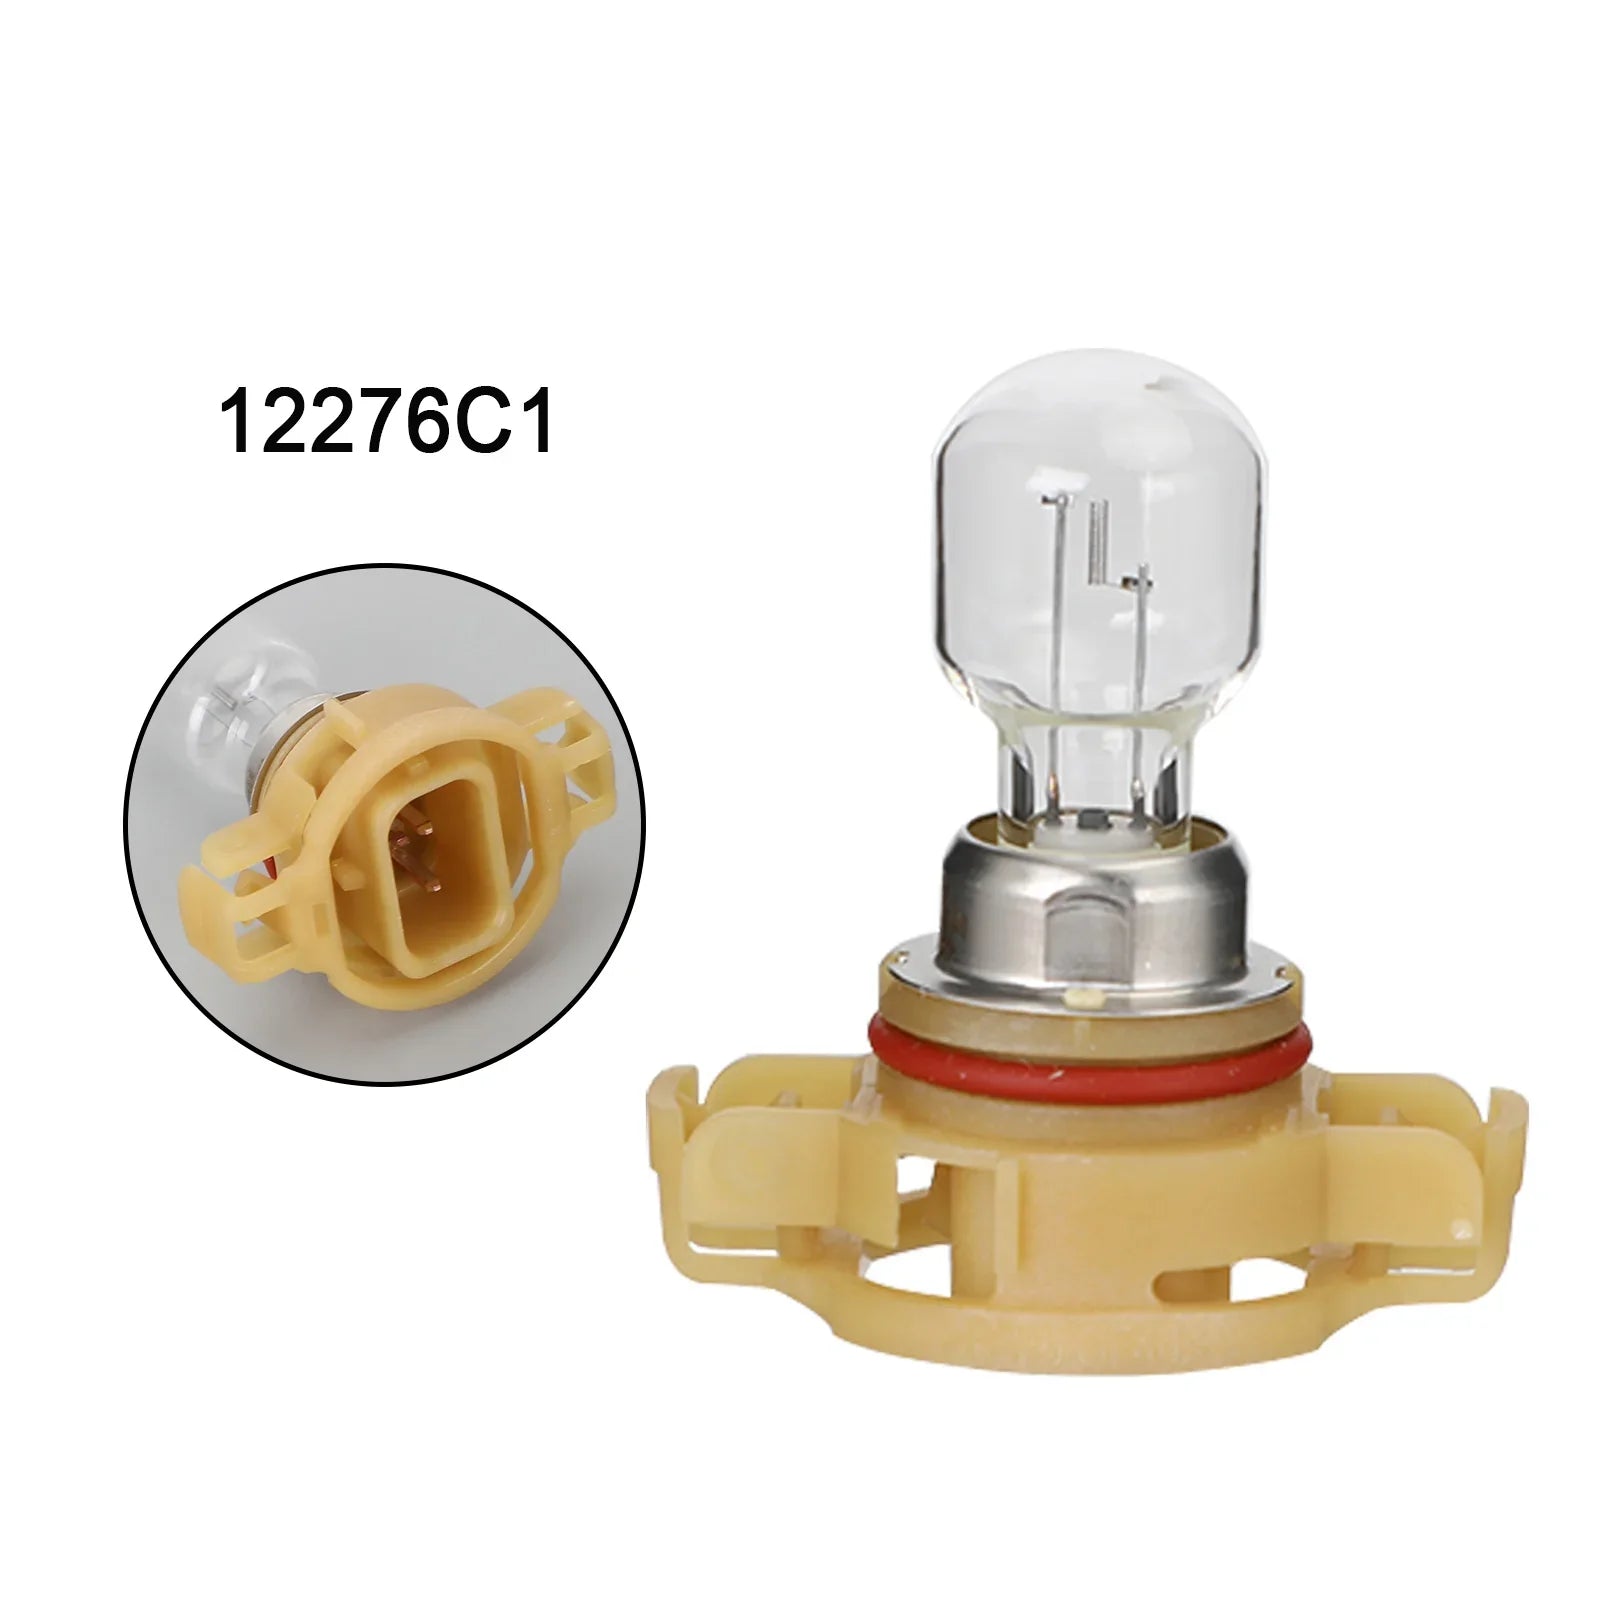 Para Philips 12276C1, bombillas auxiliares estándar para coche PSX24W 12V24W PG20/7 genéricas